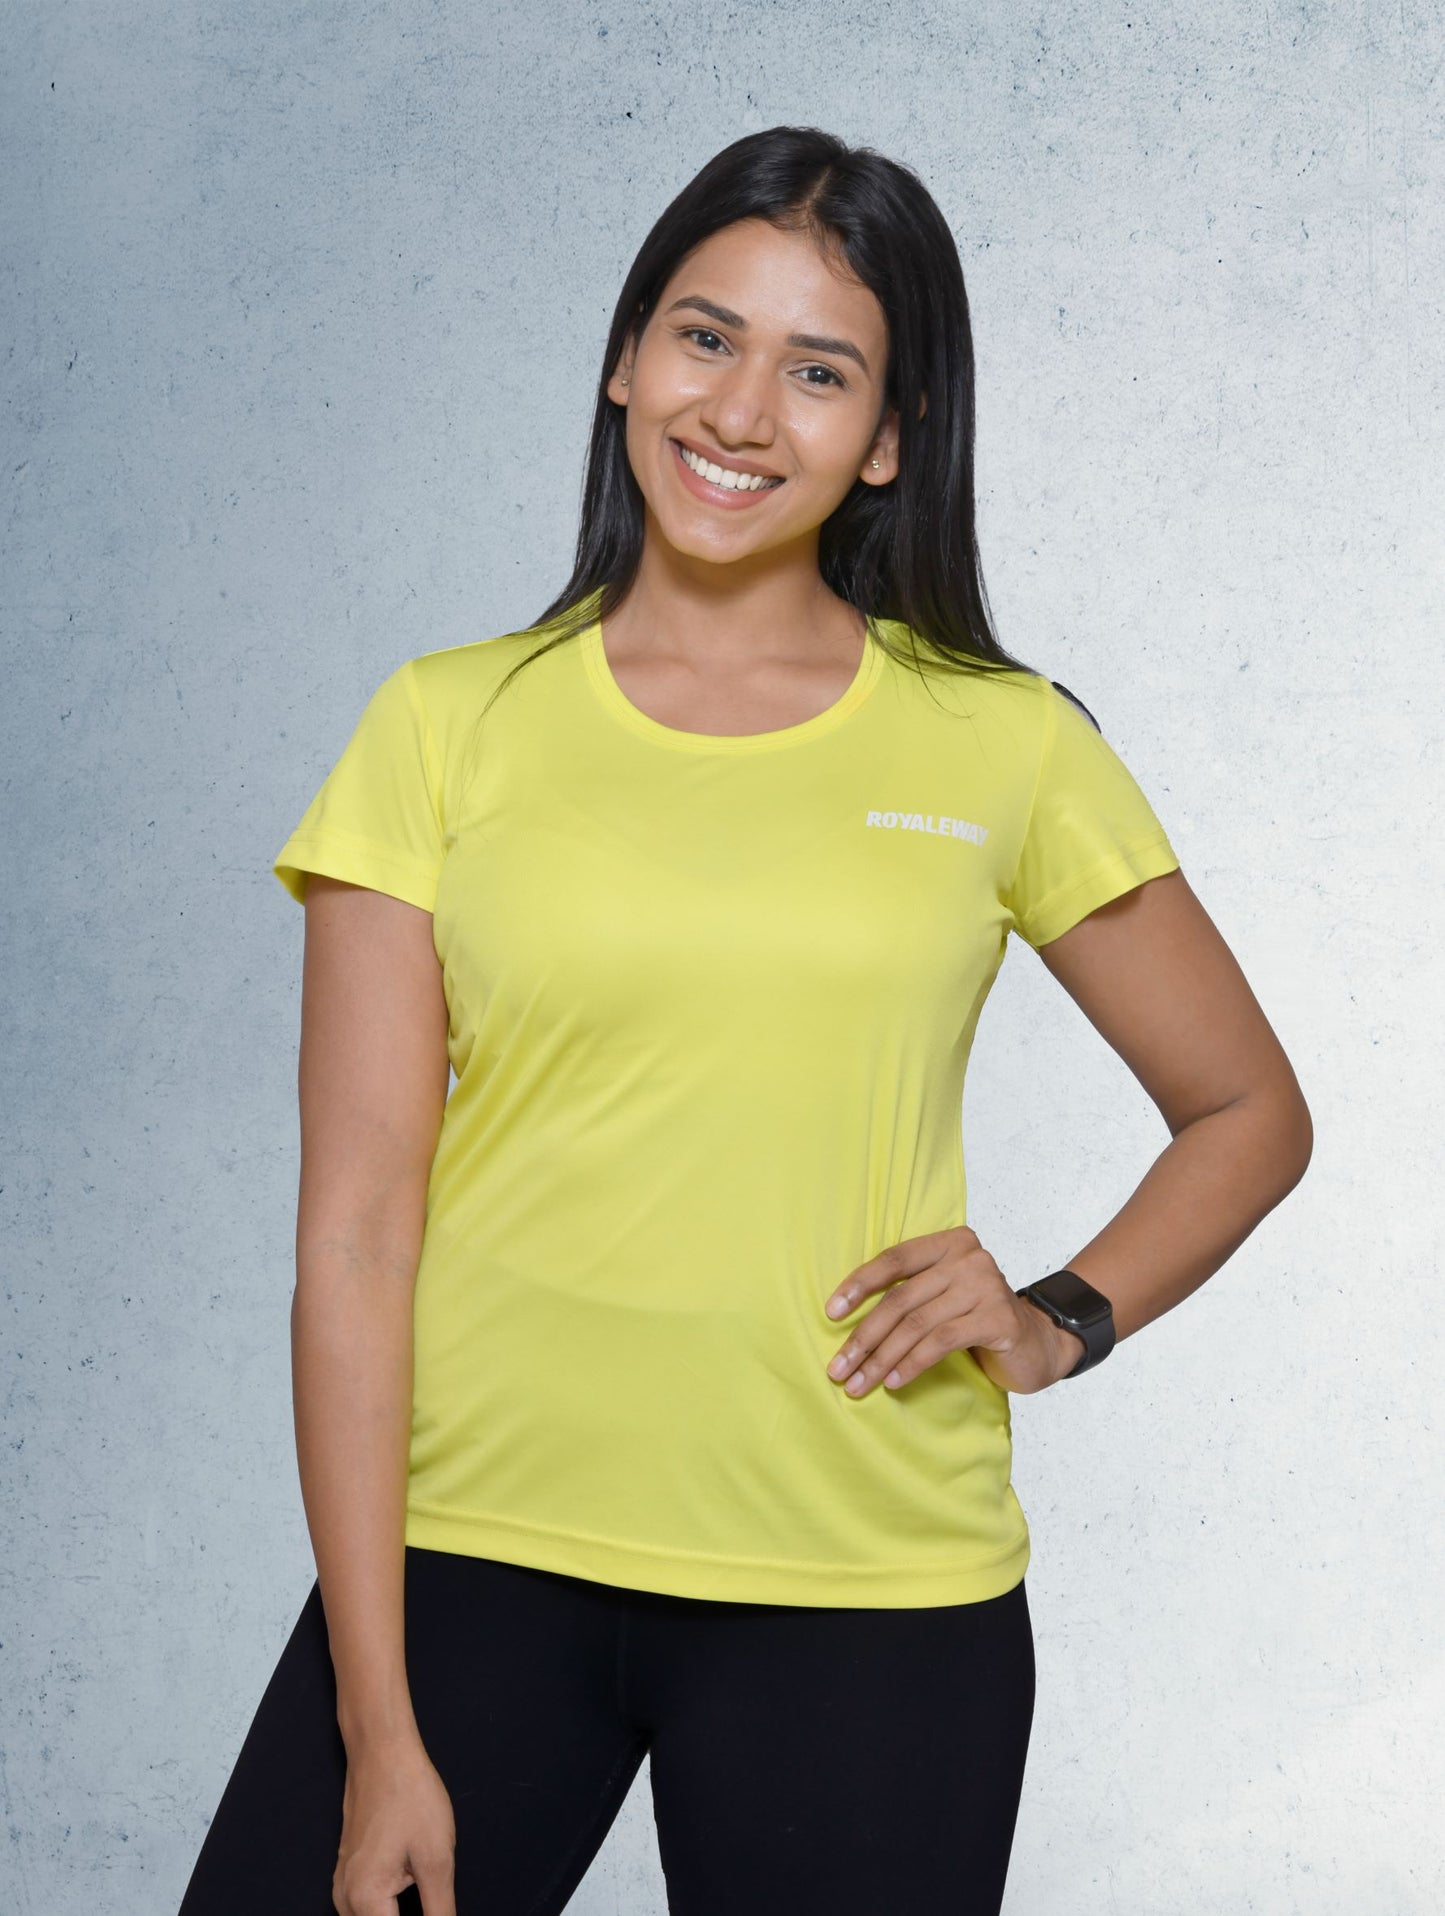 DriSOFT T Shirt Top Lemon Yellow  Women RWW2016